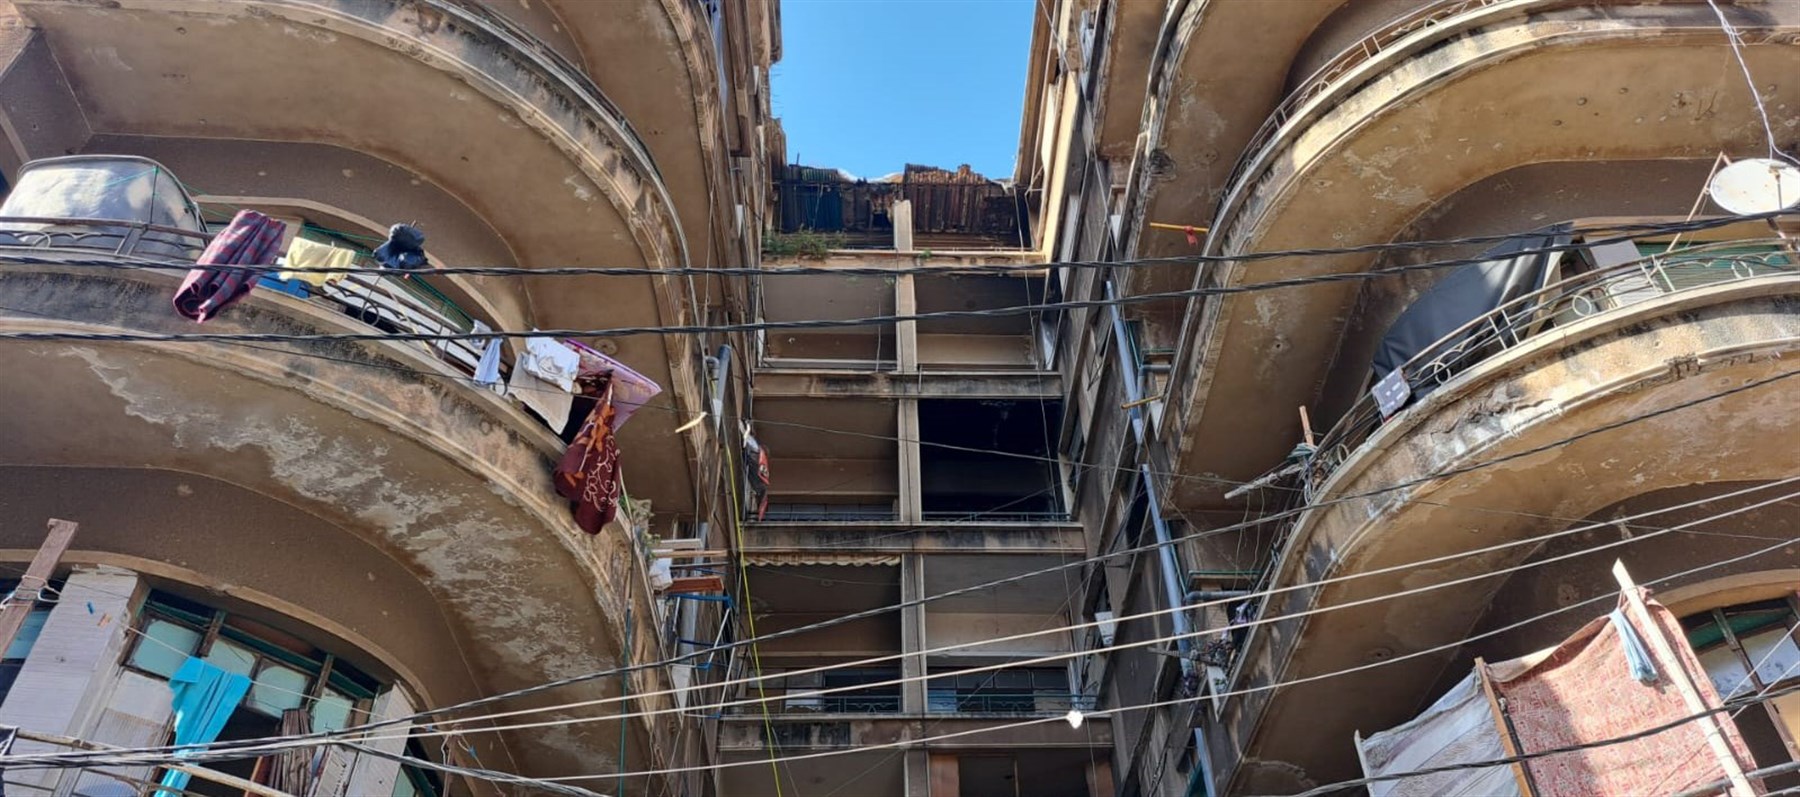 الجامعة الأميركية في بيروت تطلق منصة جديدة، تداعي الحيوات – أحوال السكن غير المستقر في بيروت